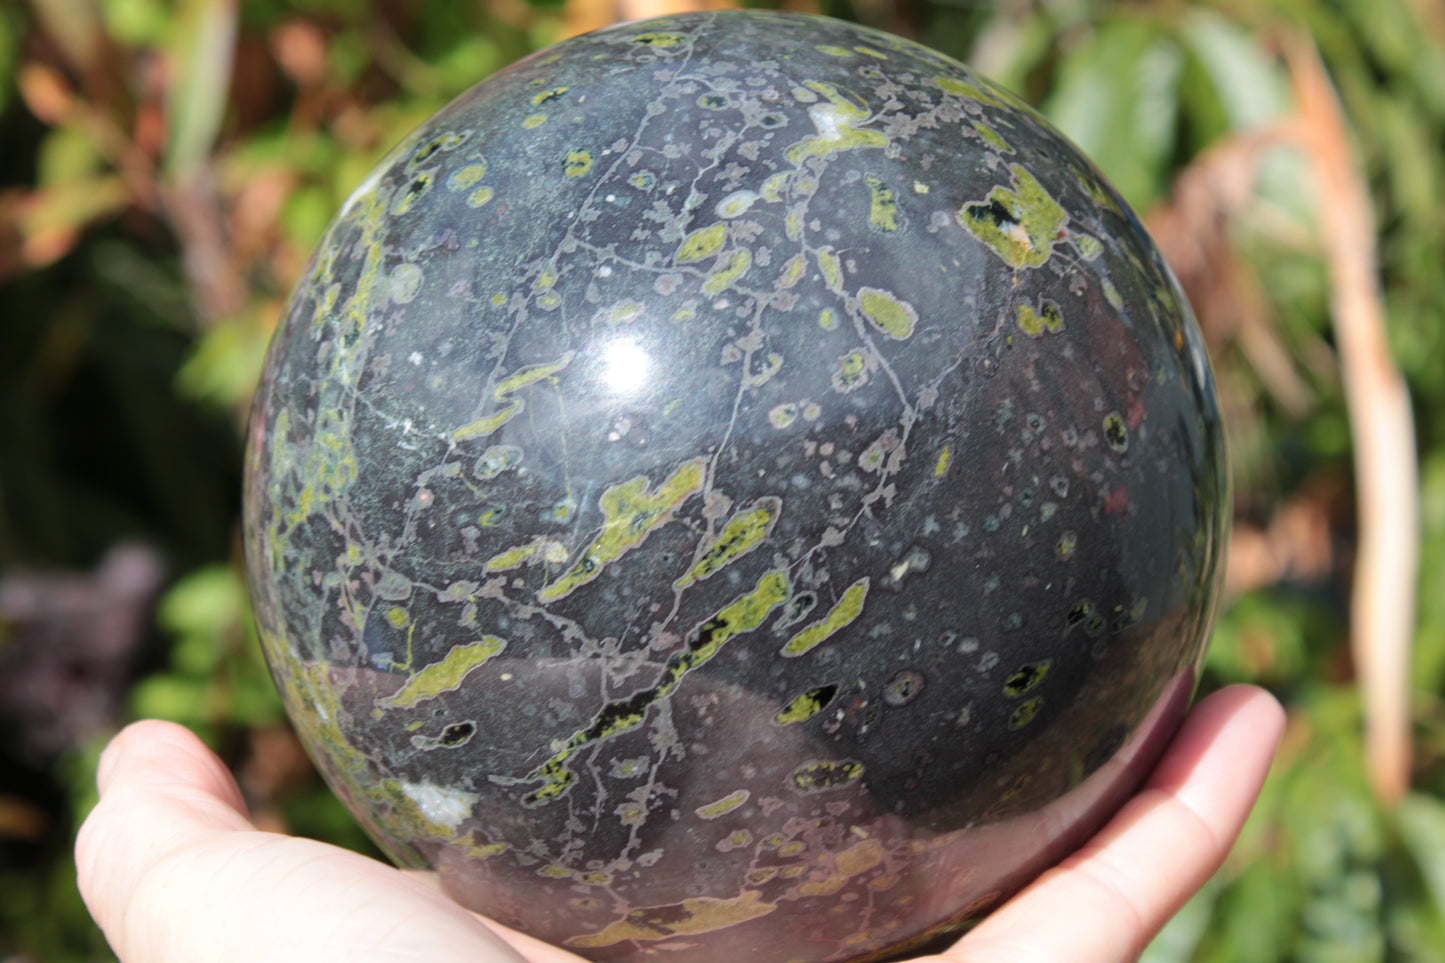 Green Plum Blossom Jade sphere 132mm 3460g